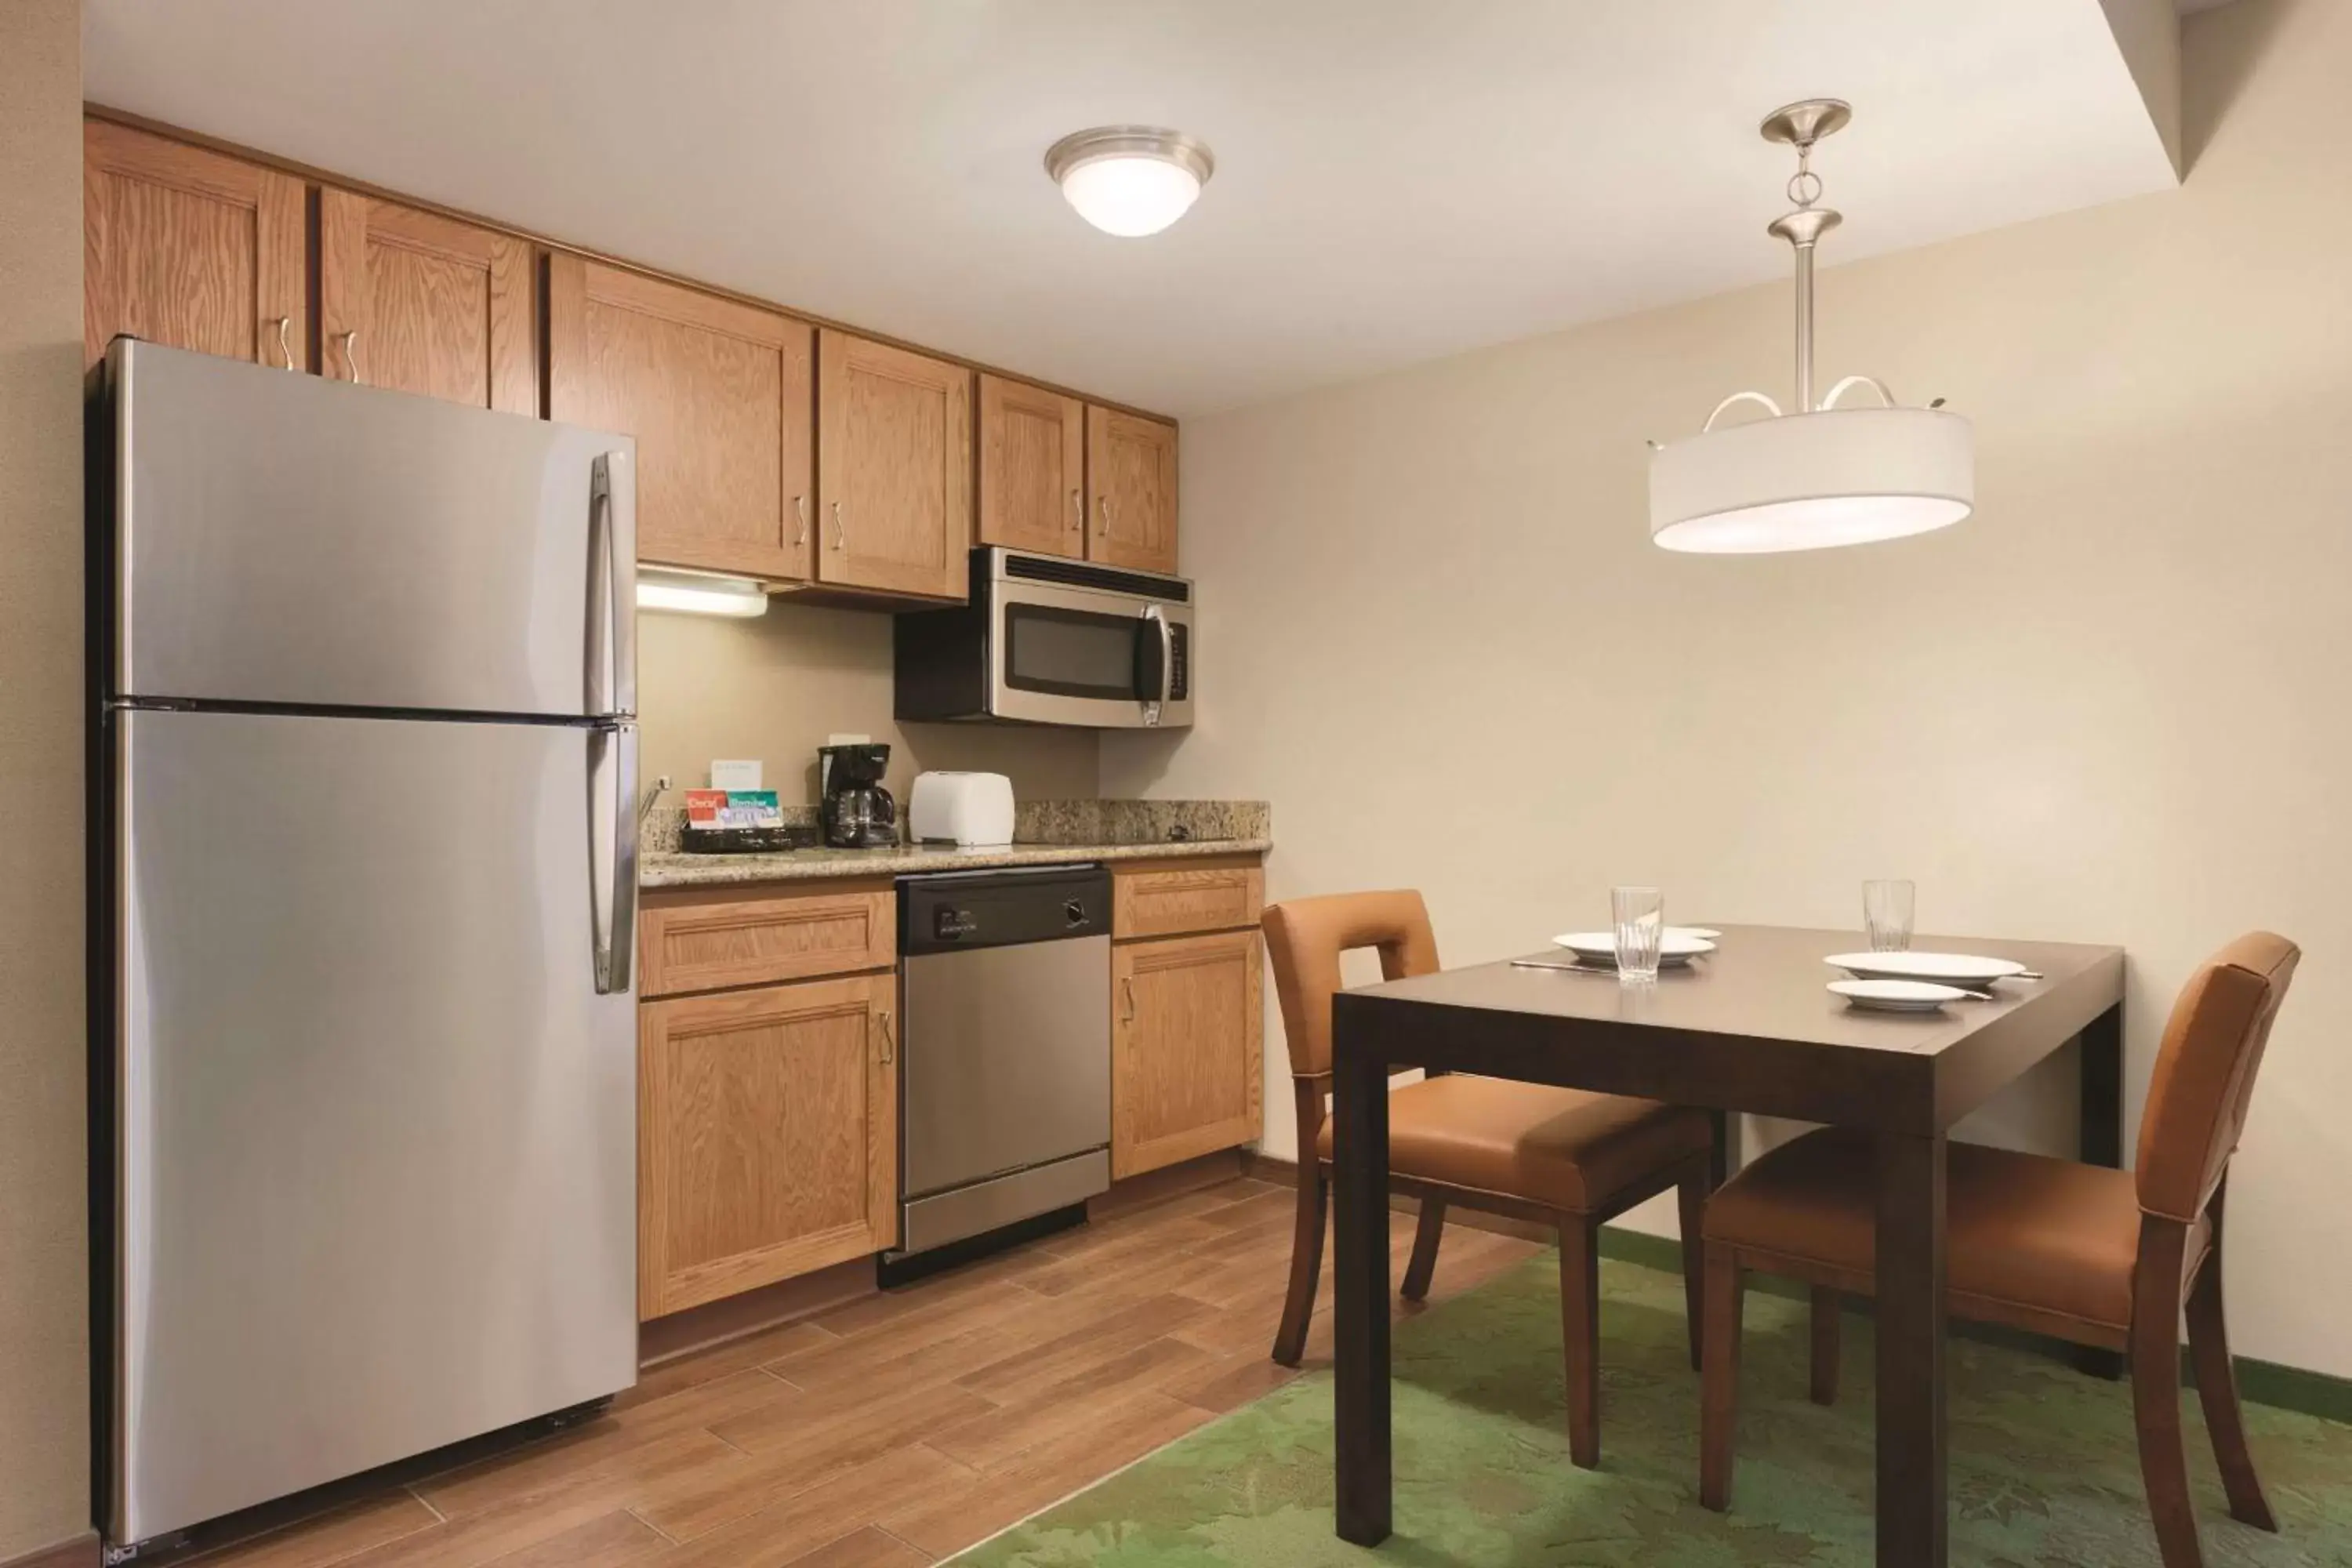 Kitchen or kitchenette, Kitchen/Kitchenette in Homewood Suites Harrisburg-West Hershey Area